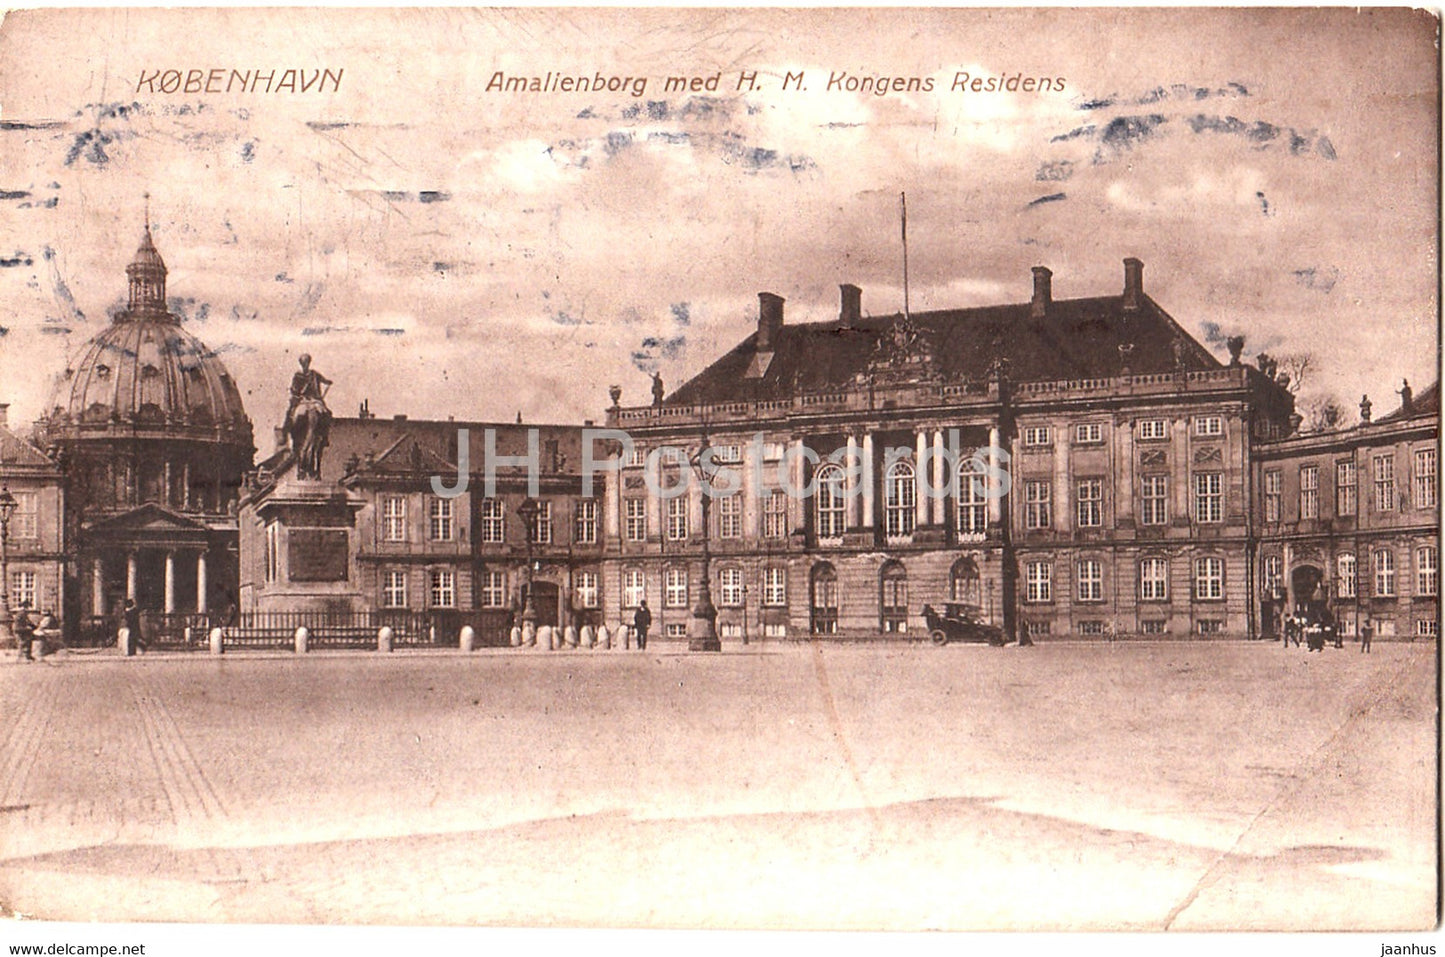 Copenhagen - Kobenhavn - Amalienborg med H M Kongens Residens - old postcard - 1919 - Denmark - used - JH Postcards